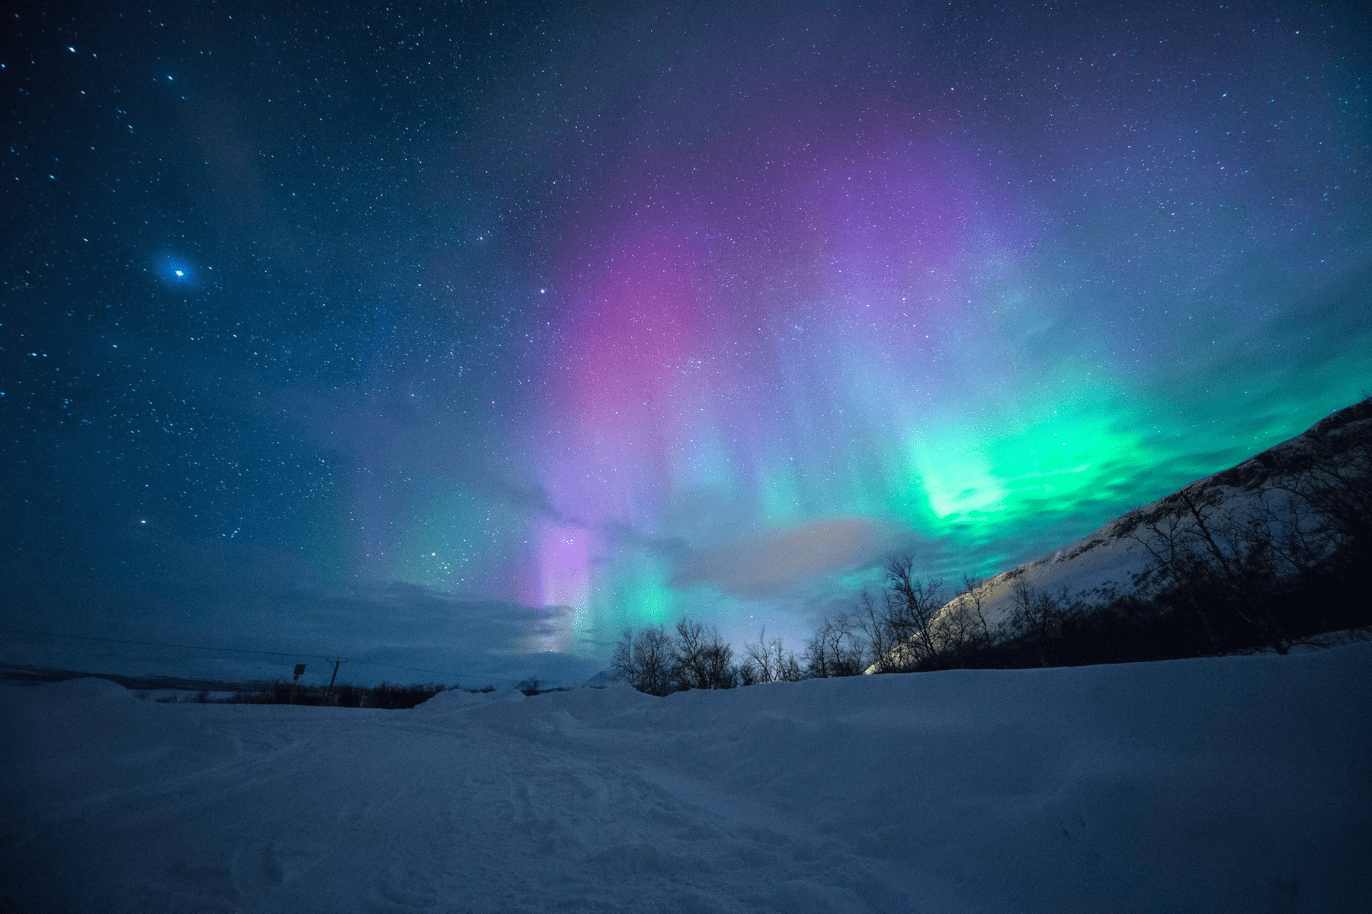 Os 7 melhores lugares do mundo para ver a Aurora Boreal - The Travellight  World